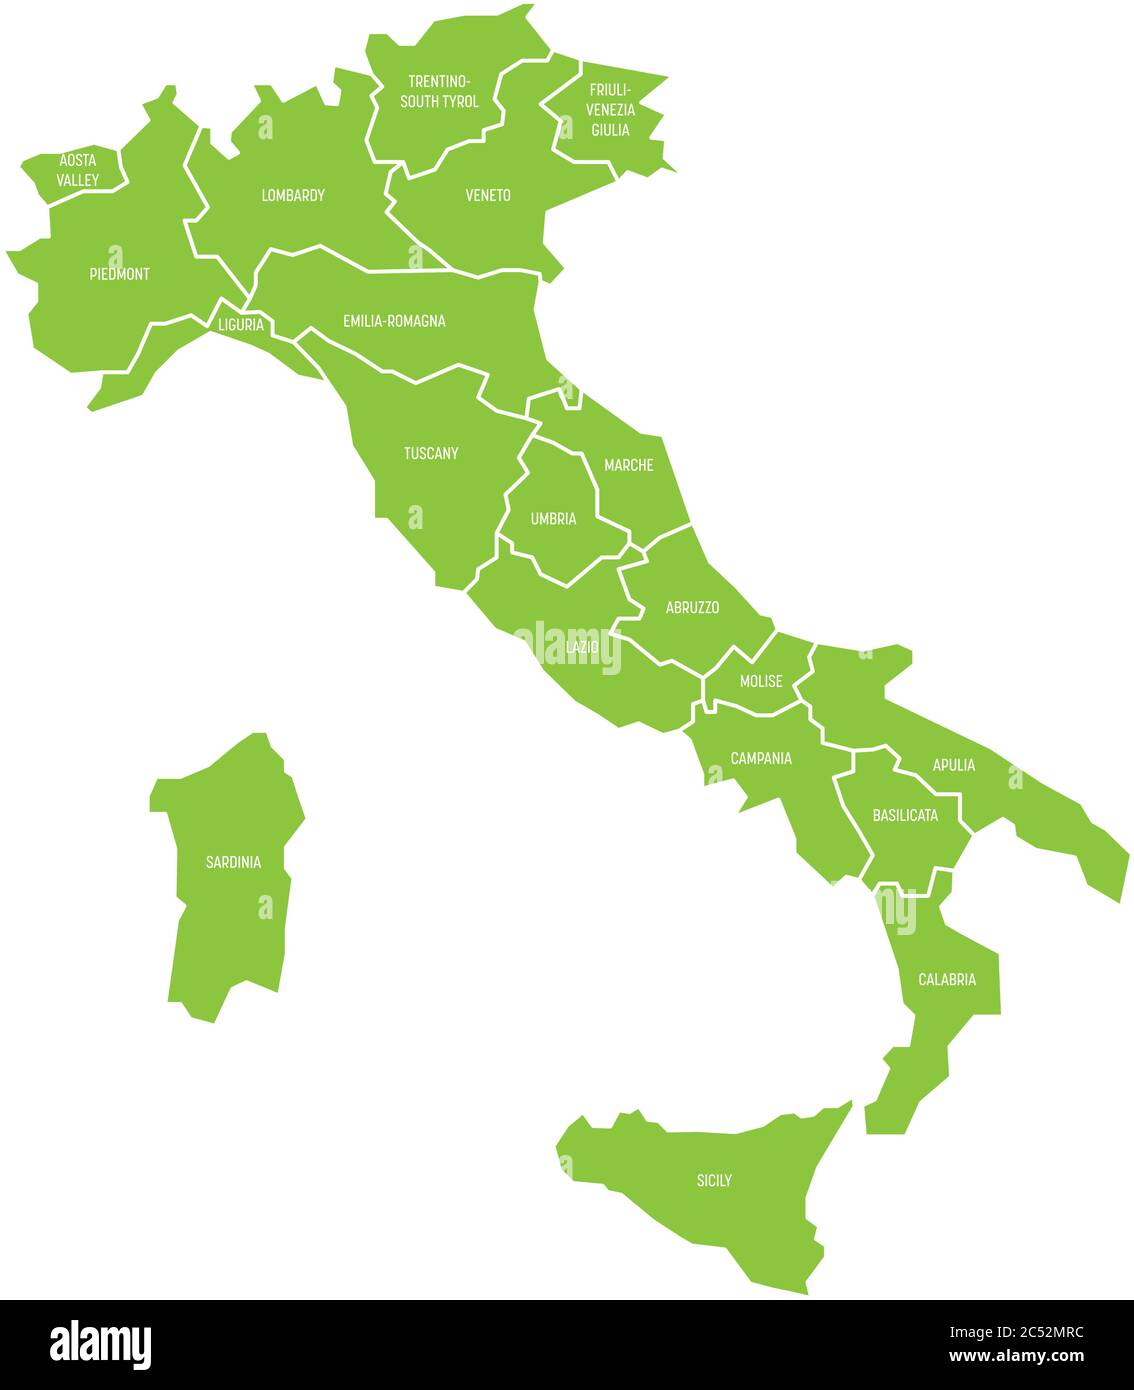 Mappa dell'Italia divisa in 20 regioni amministrative. Terra verde, bordi bianchi ed etichette bianche. Semplice illustrazione vettoriale piatta. Illustrazione Vettoriale